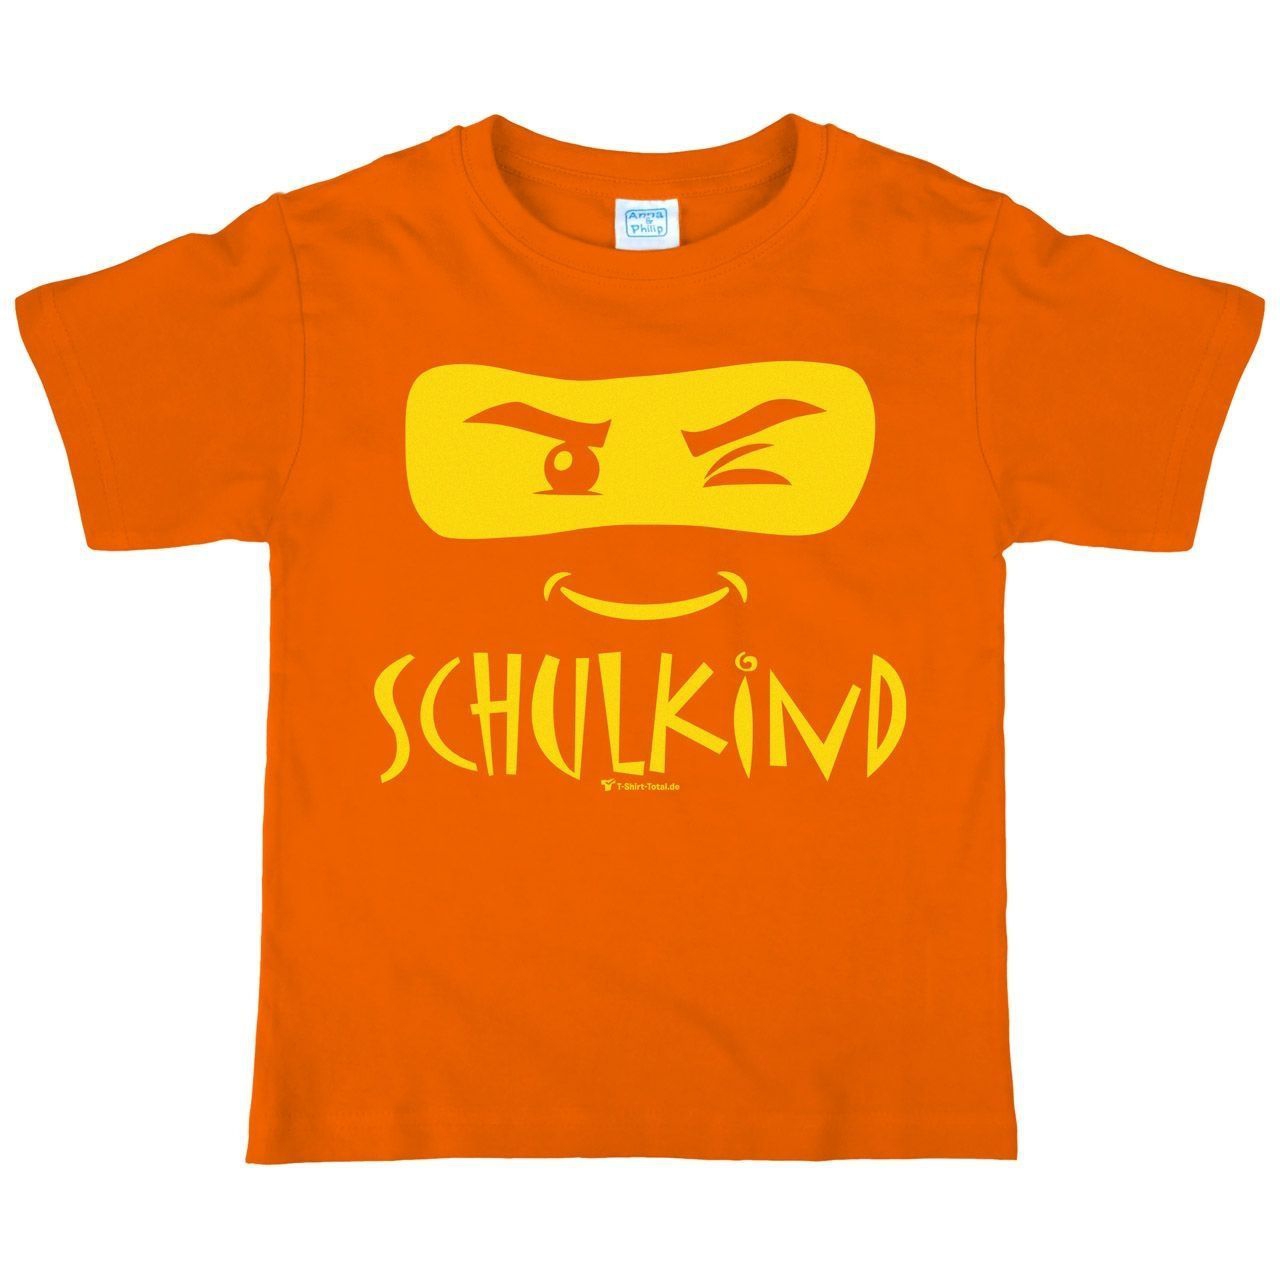 Schulkind Maske Kinder T-Shirt orange 122 / 128